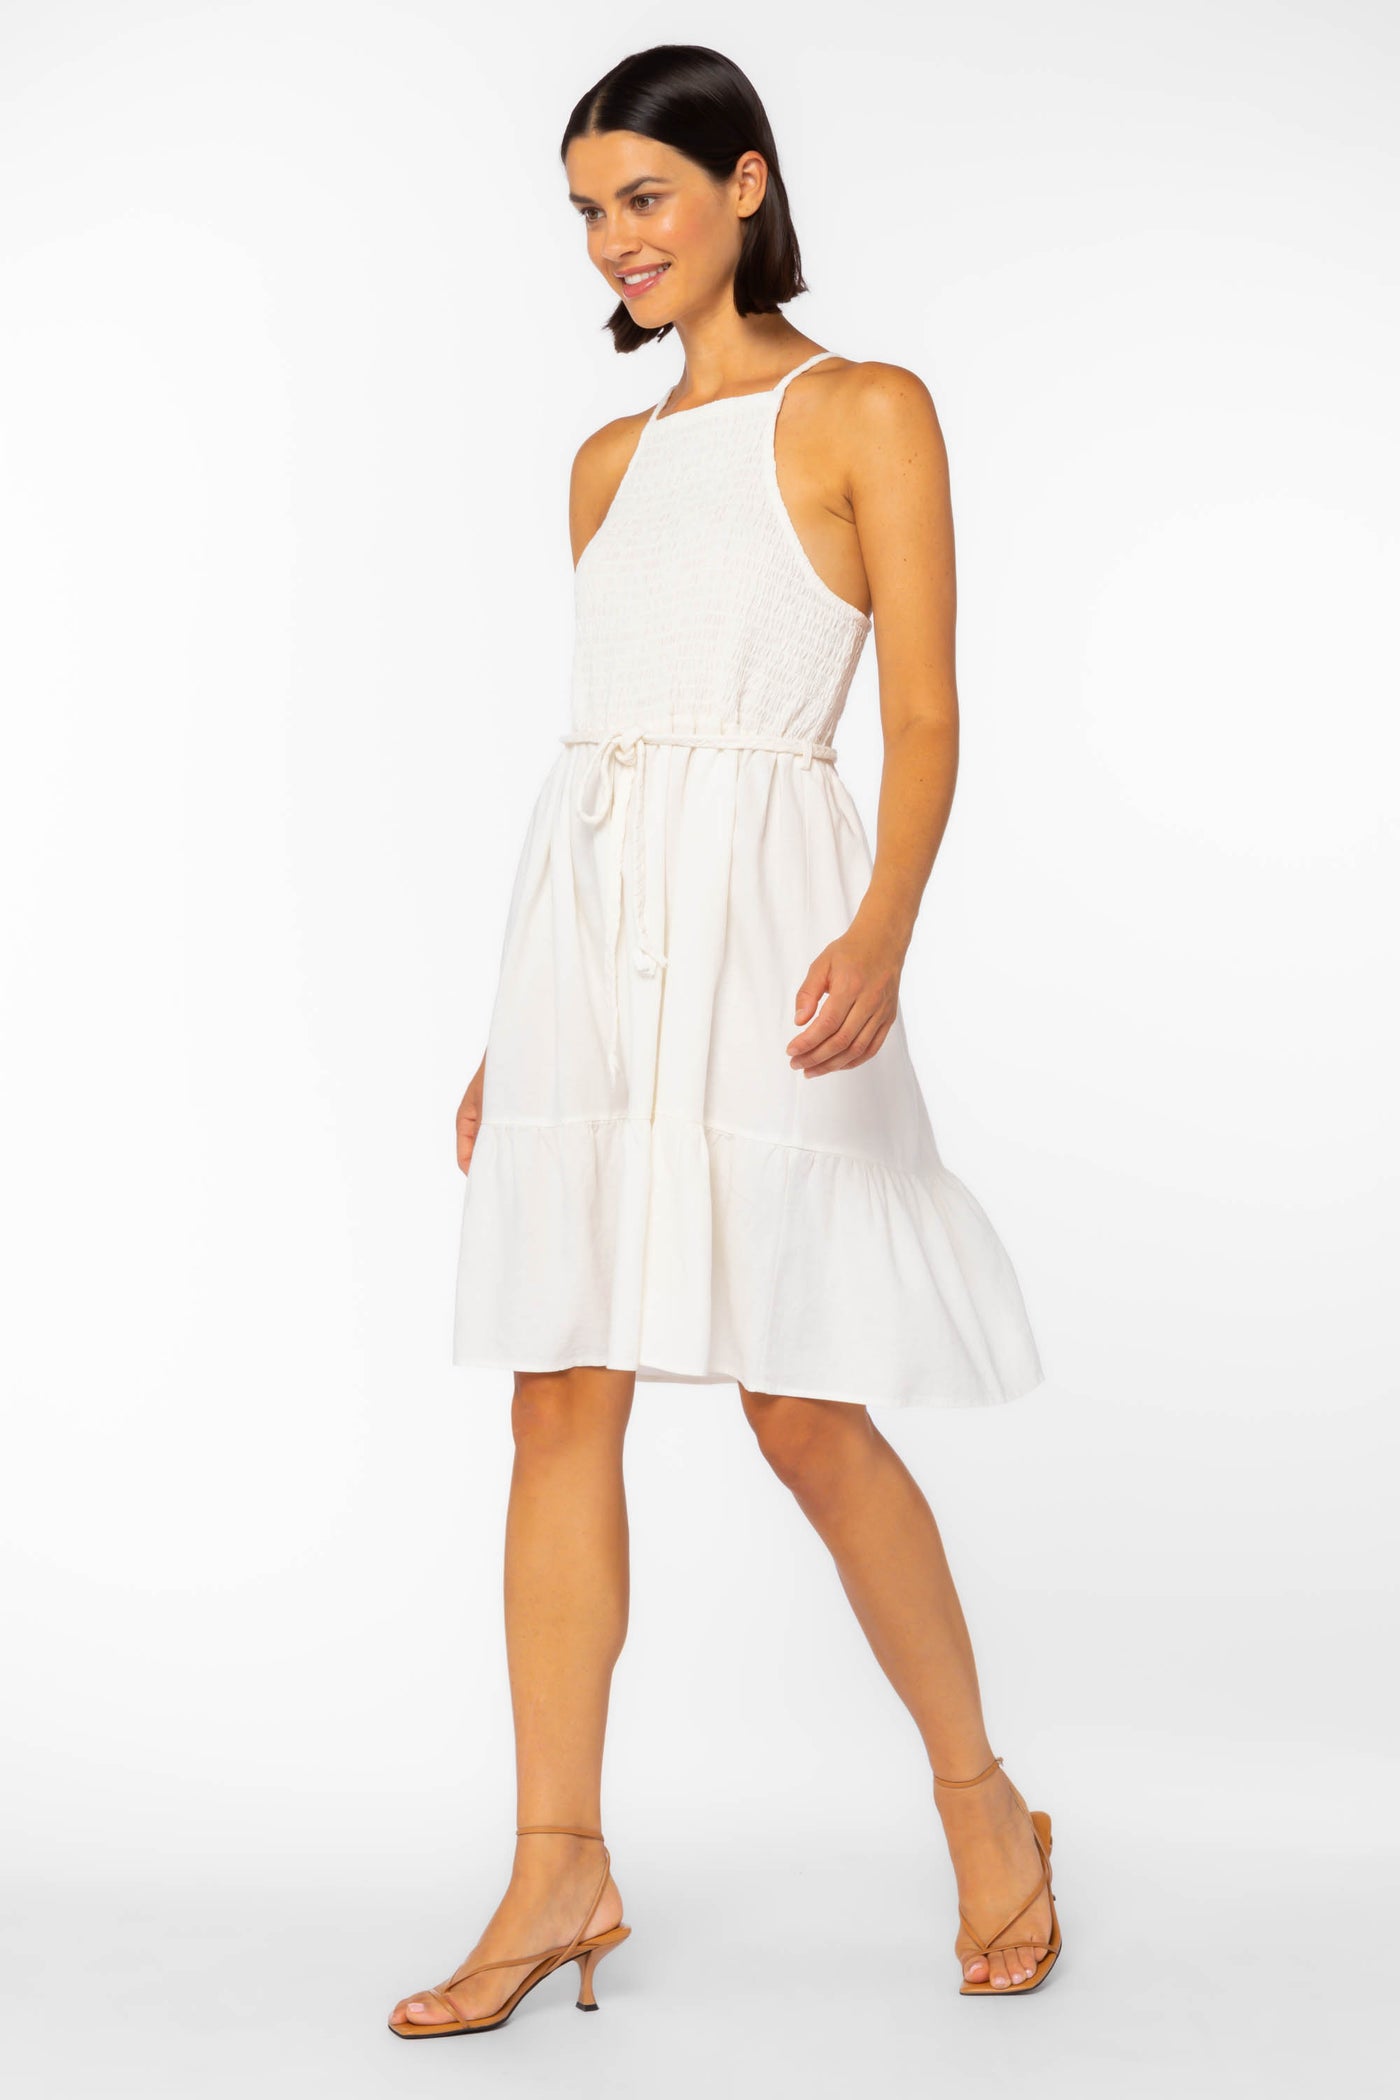 Maryanne Ivory Dress - Dresses - Velvet Heart Clothing